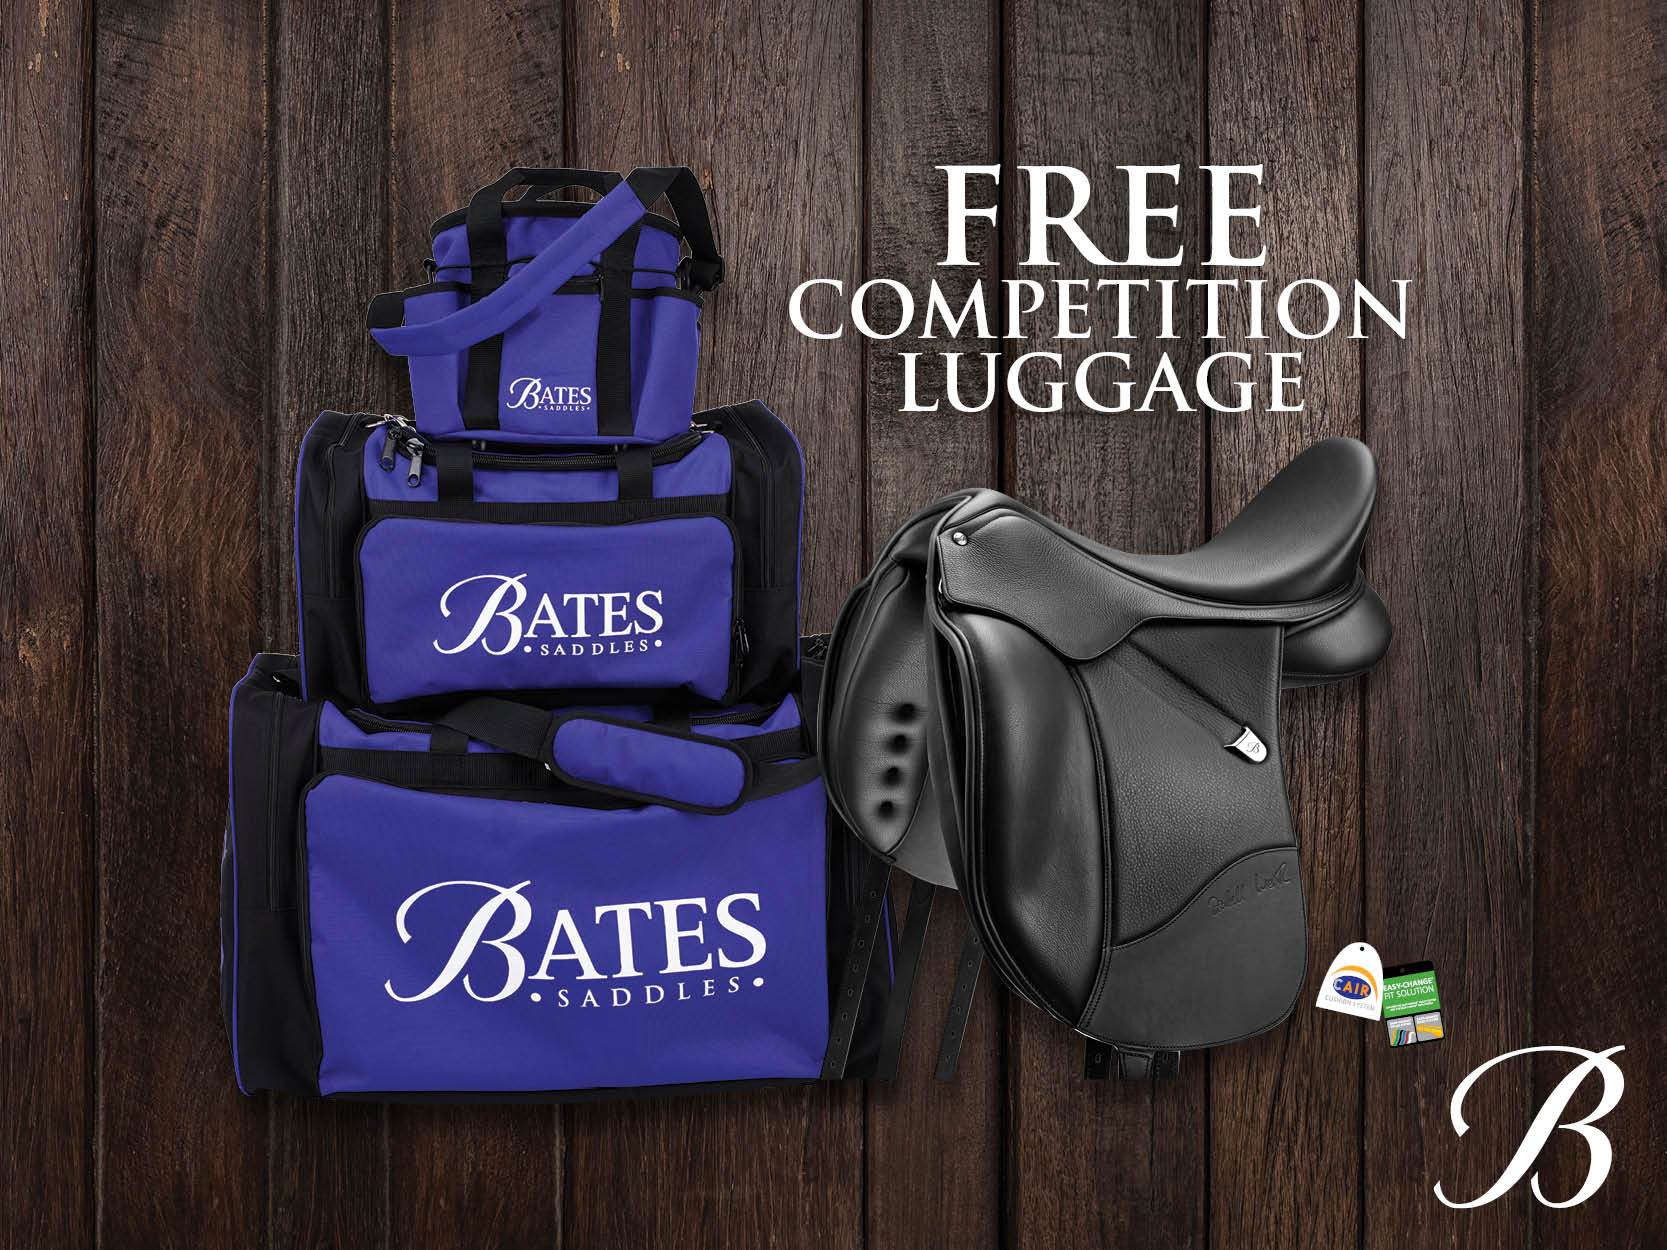 Bates Saddles: FREE Competition Luggage!*